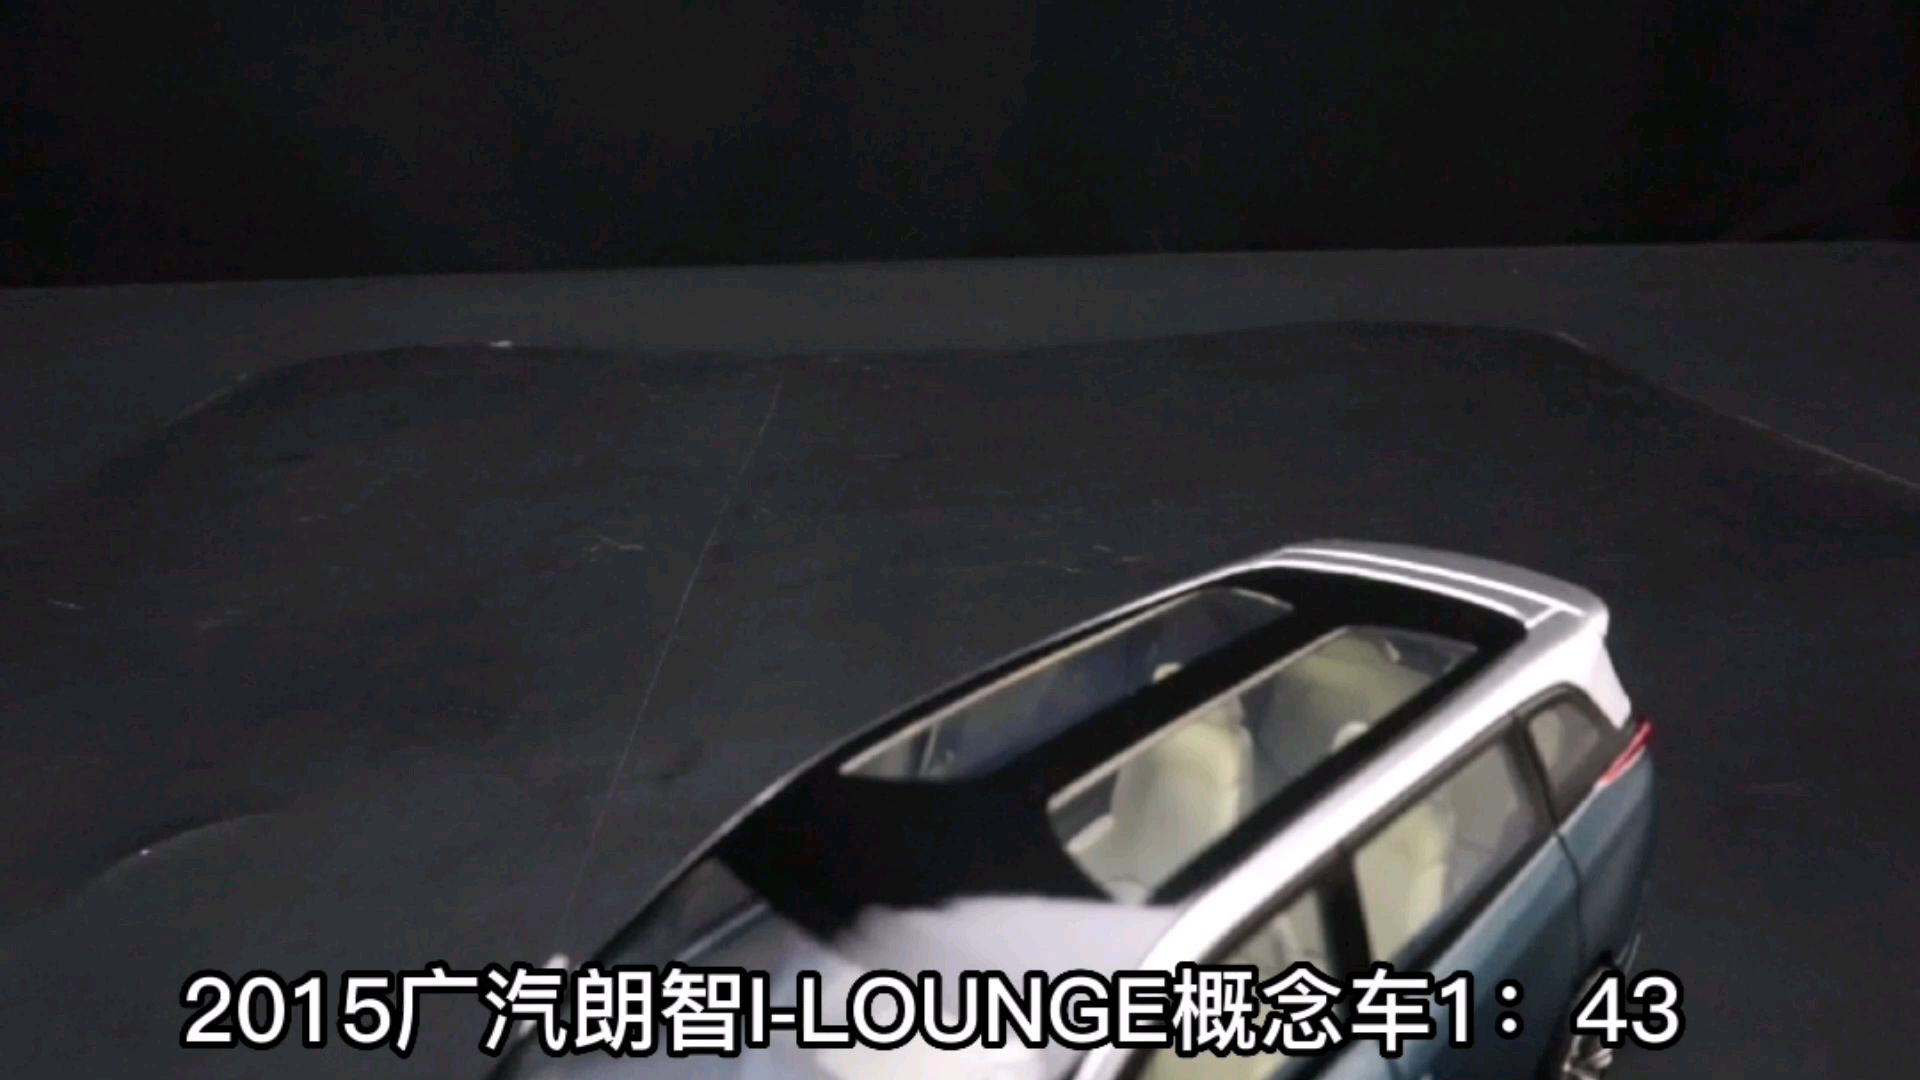 2015广汽朗智I-LOUNGE概念车1：43，东晓龙8模型收藏馆藏品